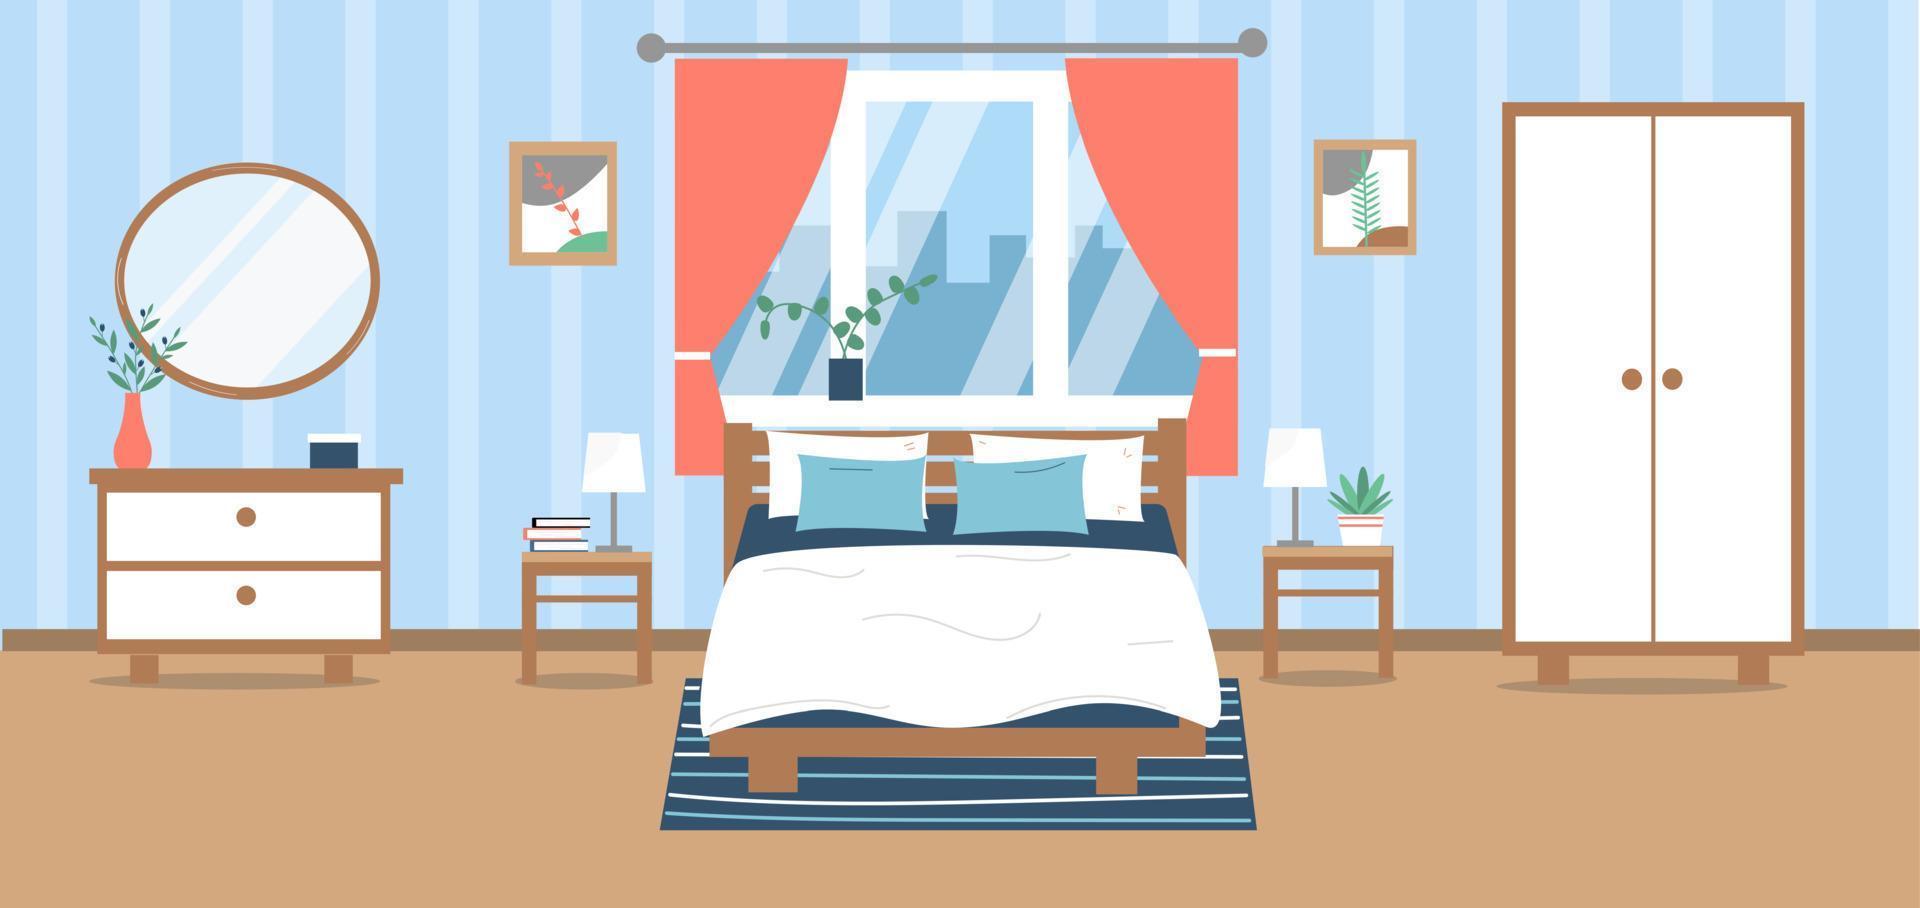 interior do quarto moderno. cama, guarda-roupa, guarda-roupa, plantas, quadros, decoração. ilustração vetorial em estilo simples. vetor